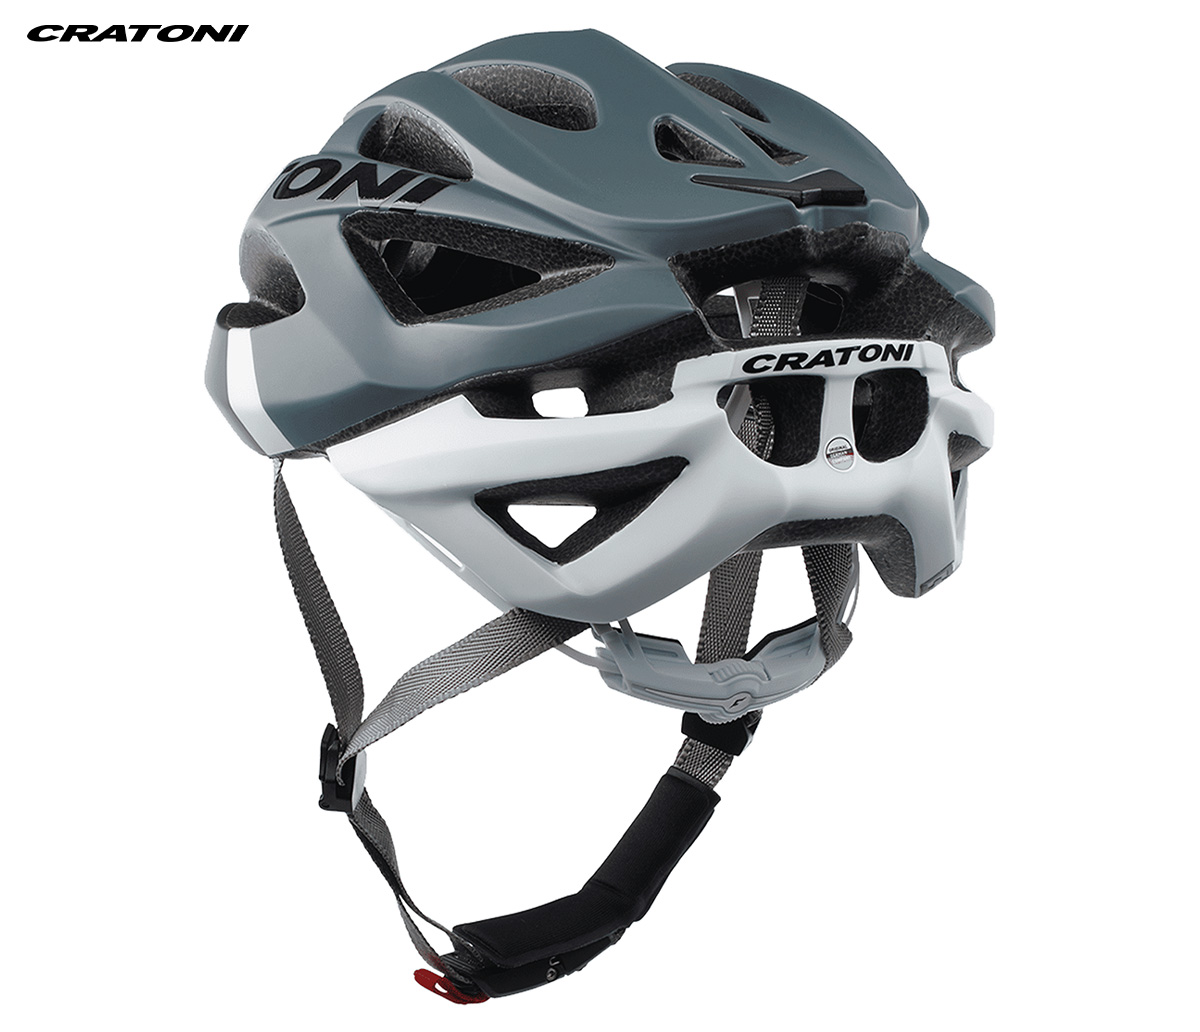 Dettaglio del retro del nuovo casco per bici da strada Cratoni C-Bolt